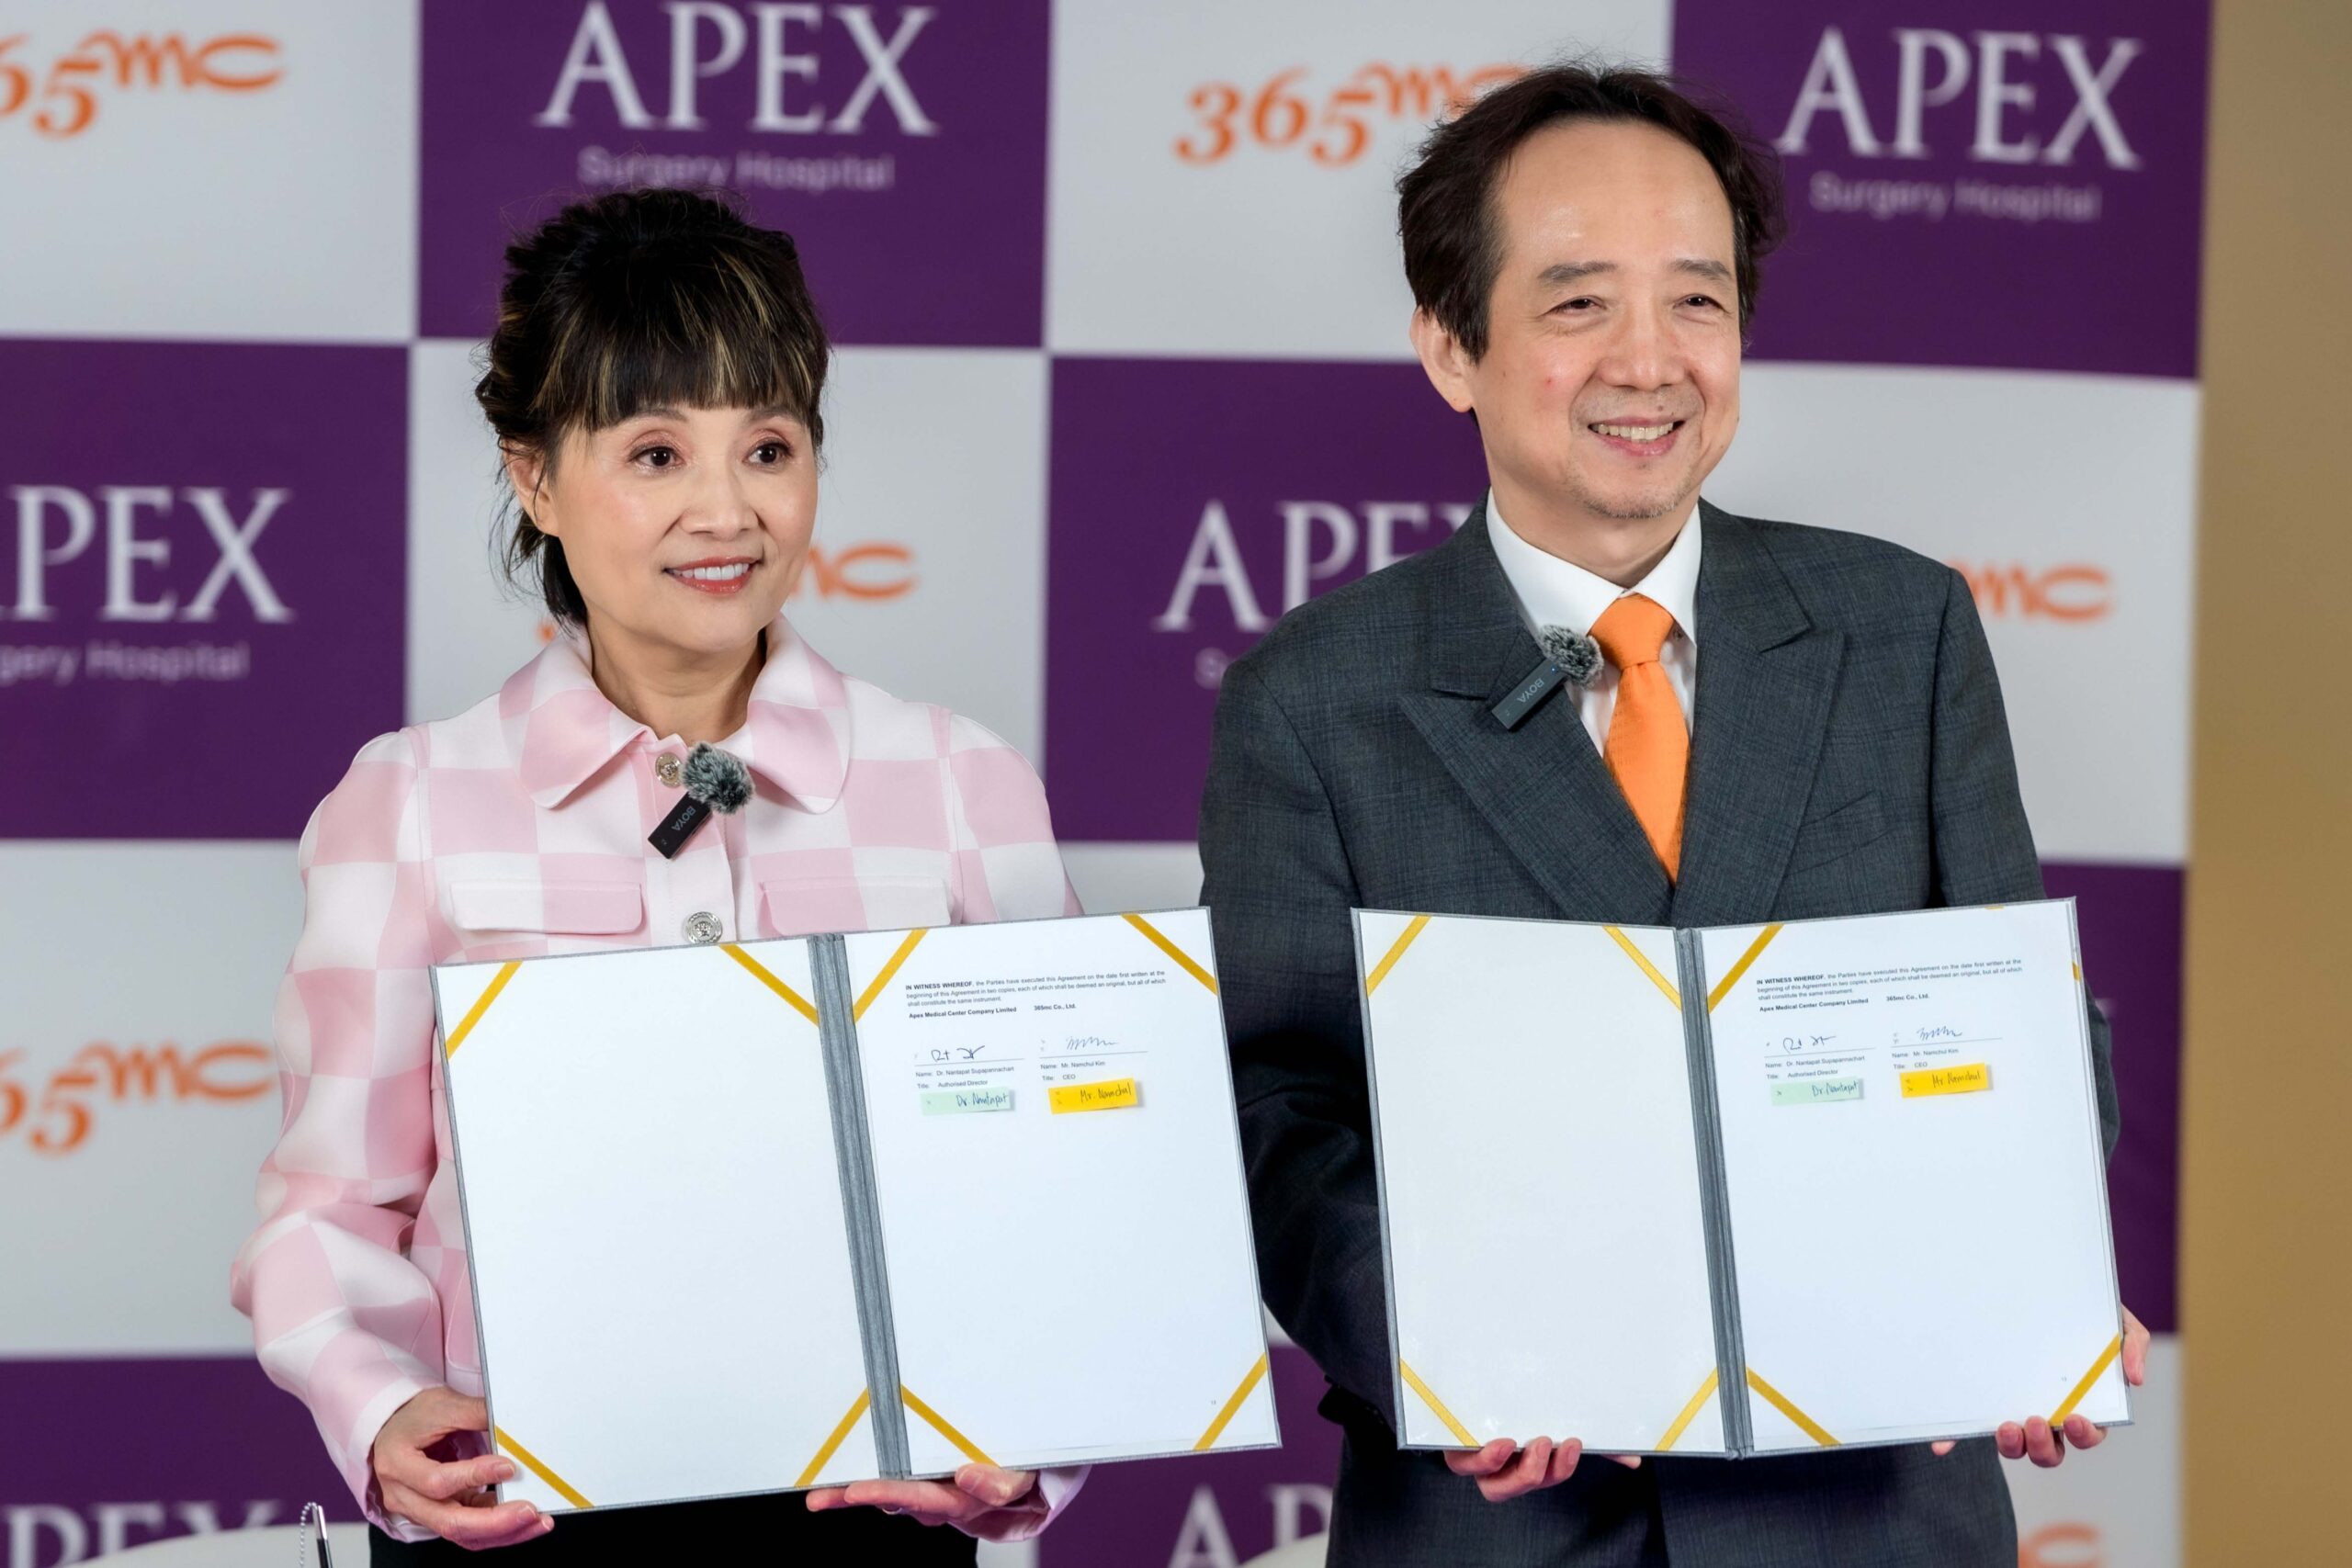 Apex Medical Center จับมือ โรงพยาบาล 365 MC จากเกาหลีใต้ เปิดศูนย์การแพทย์เฉพาะทางด้านการดูดไขมัน โดยใช้นวัตกรรม LAMS